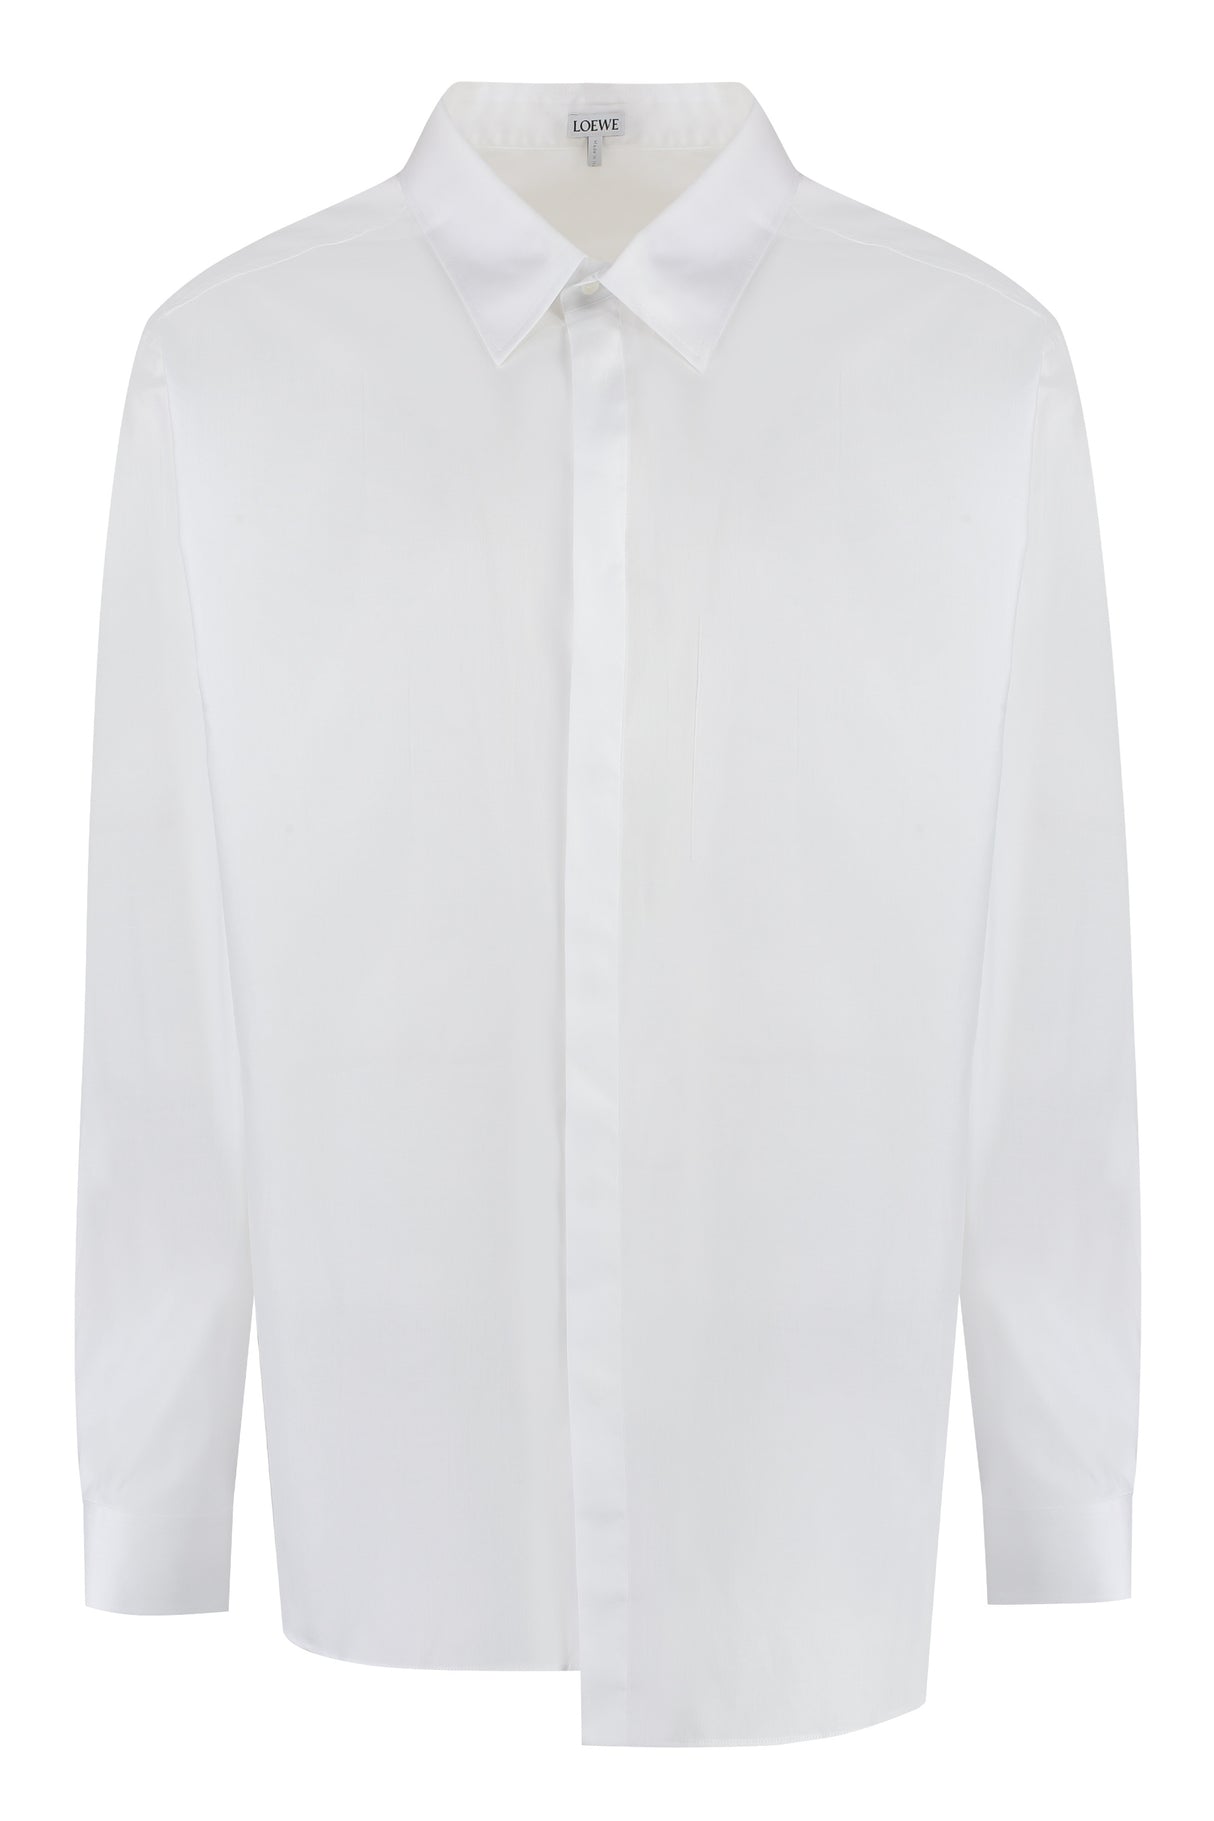 Men's Asymmetrical White Cotton Shirt